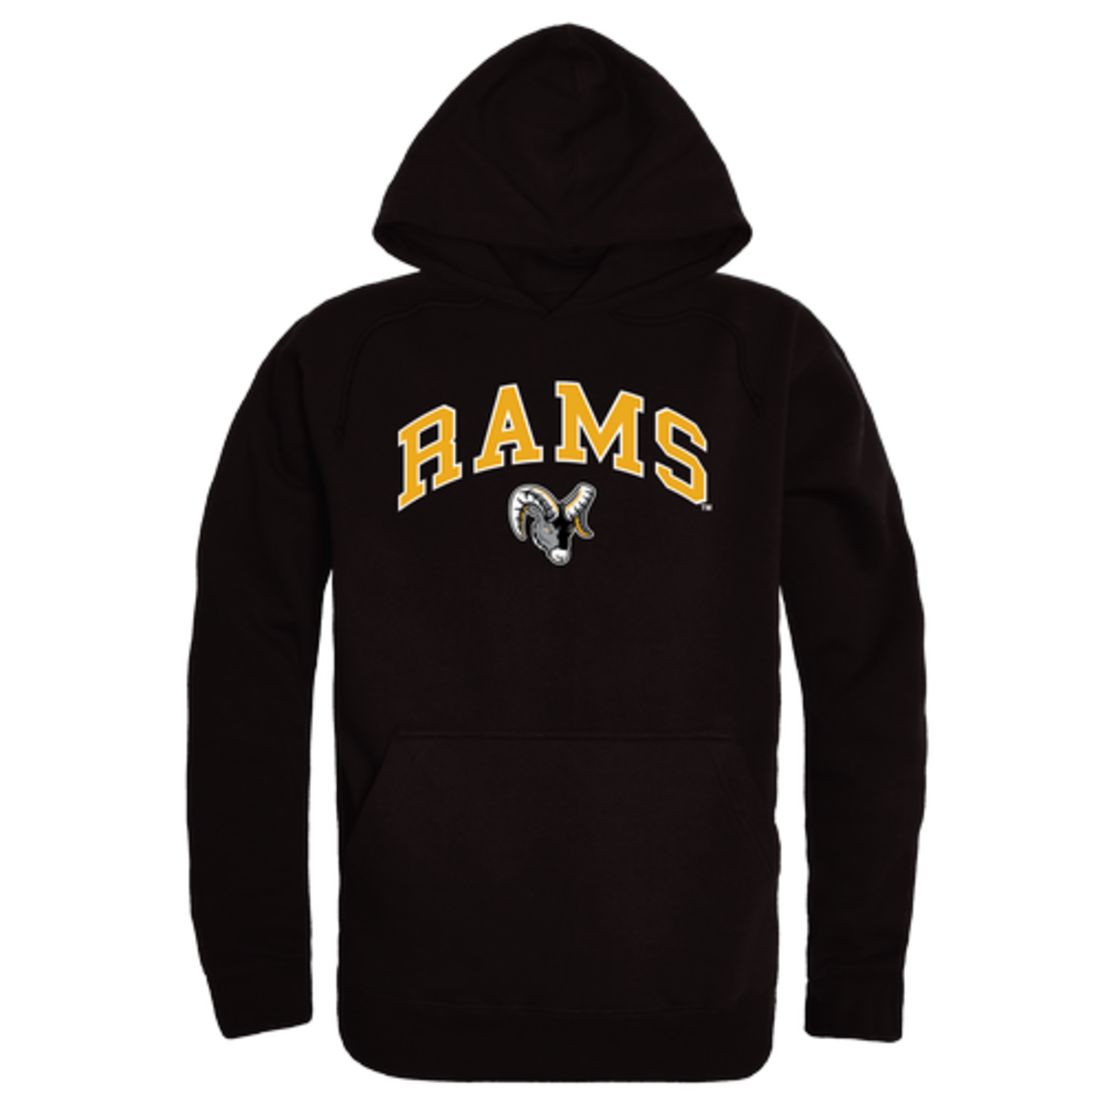 Framingham-State-University-Rams-Campus-Fleece-Hoodie-Sweatshirts